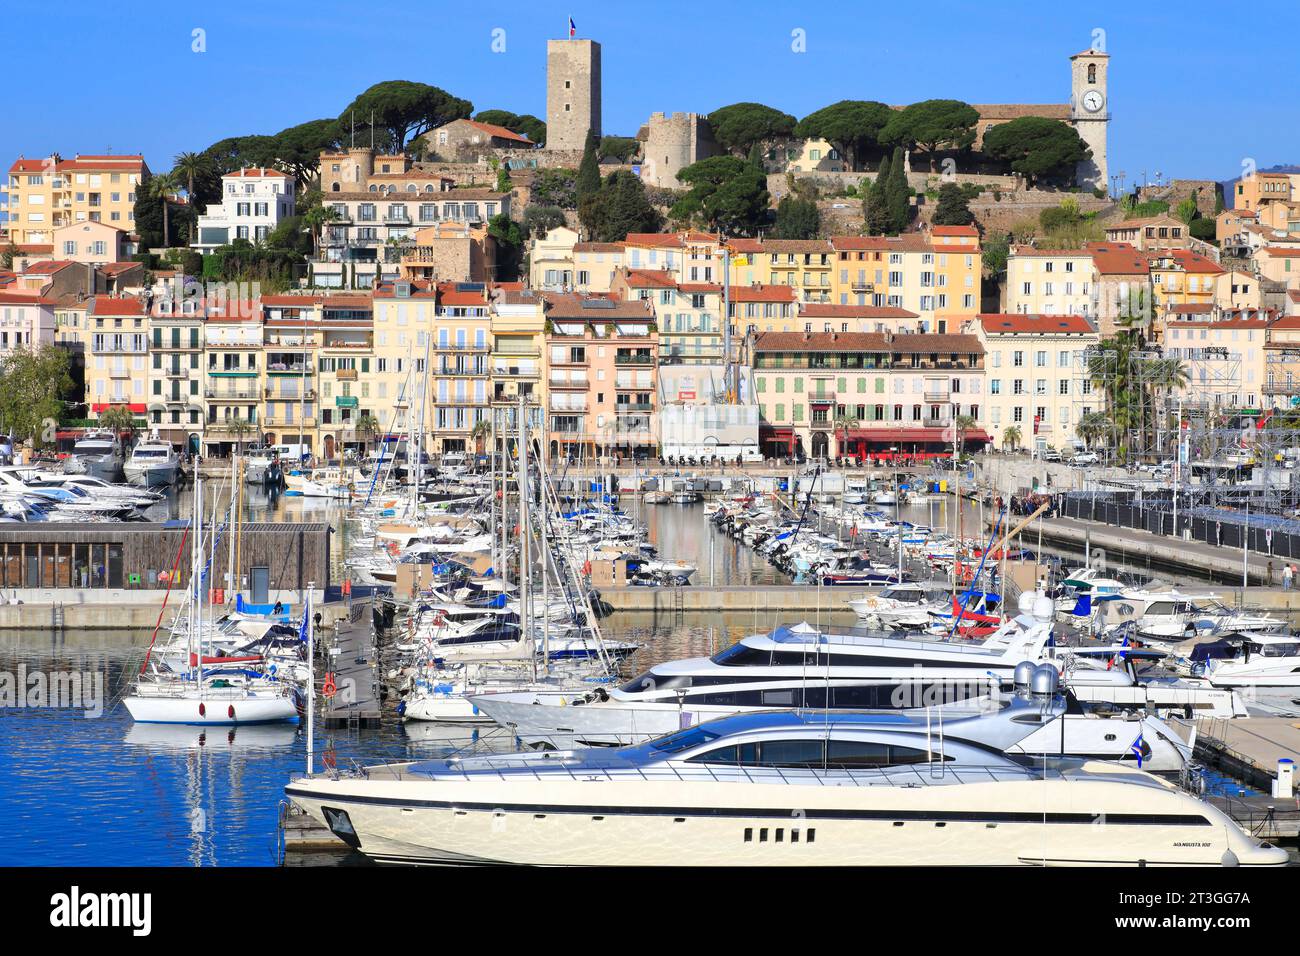 Francia, Alpi marittime, Cannes, vista del Porto Vecchio e del quartiere Suquet con la chiesa di Notre Dame d'Esperance e il Château de la Castre Foto Stock